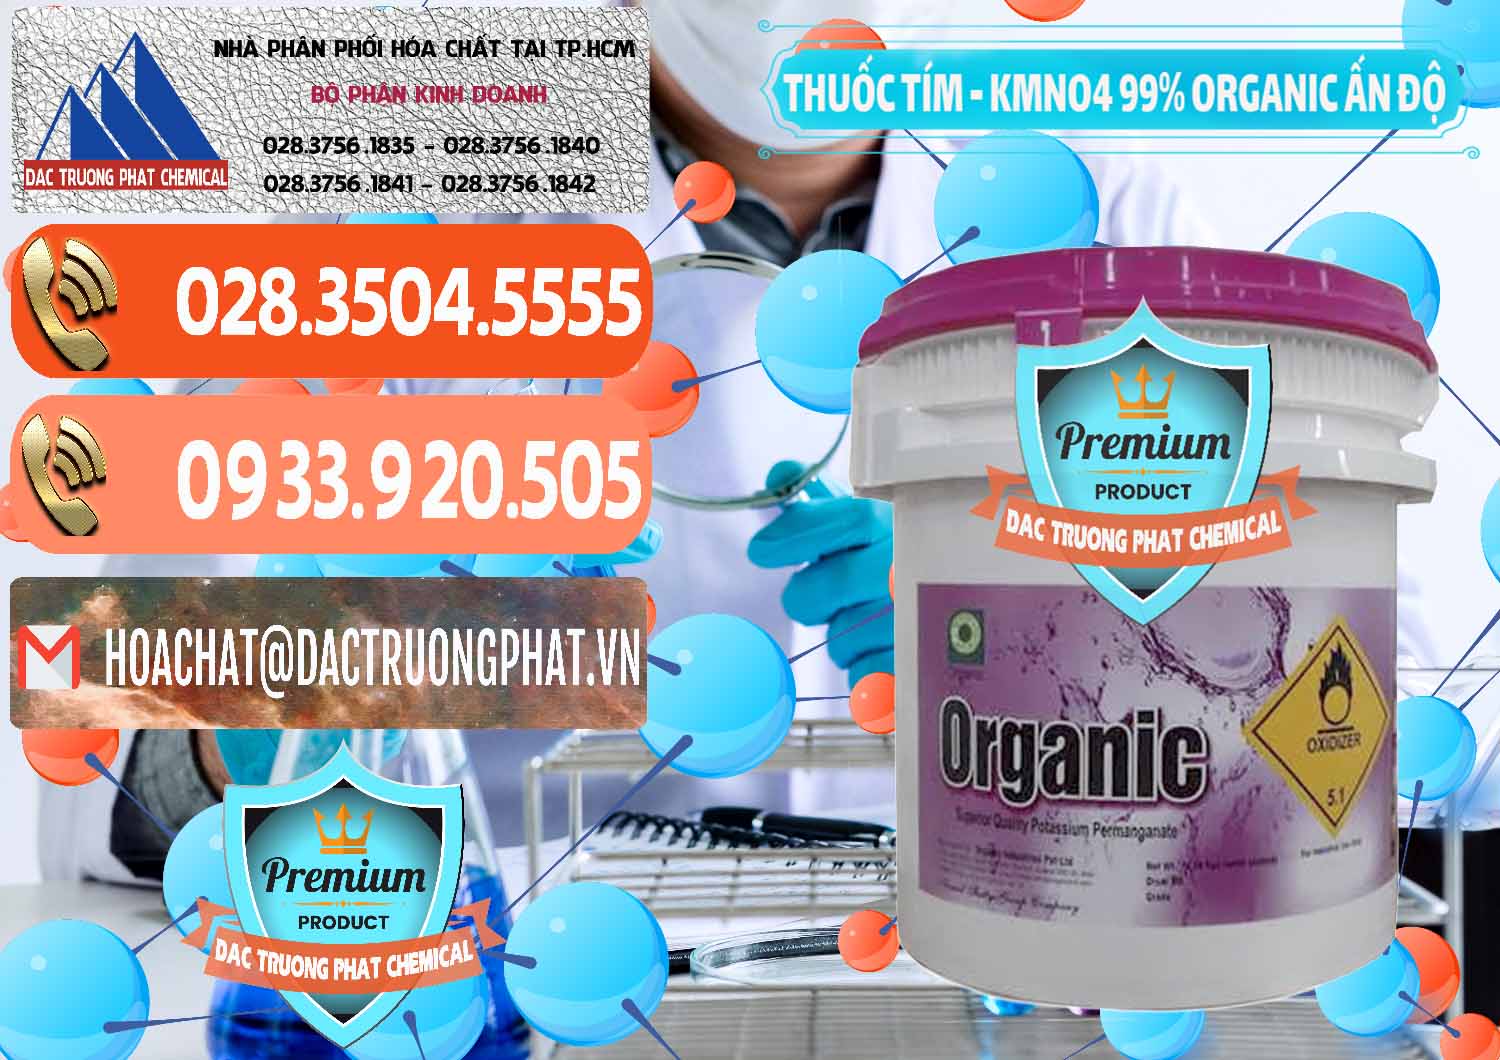 Cty nhập khẩu & bán Thuốc Tím - KMNO4 99% Organic Ấn Độ India - 0216 - Chuyên kinh doanh & cung cấp hóa chất tại TP.HCM - hoachatmientay.com